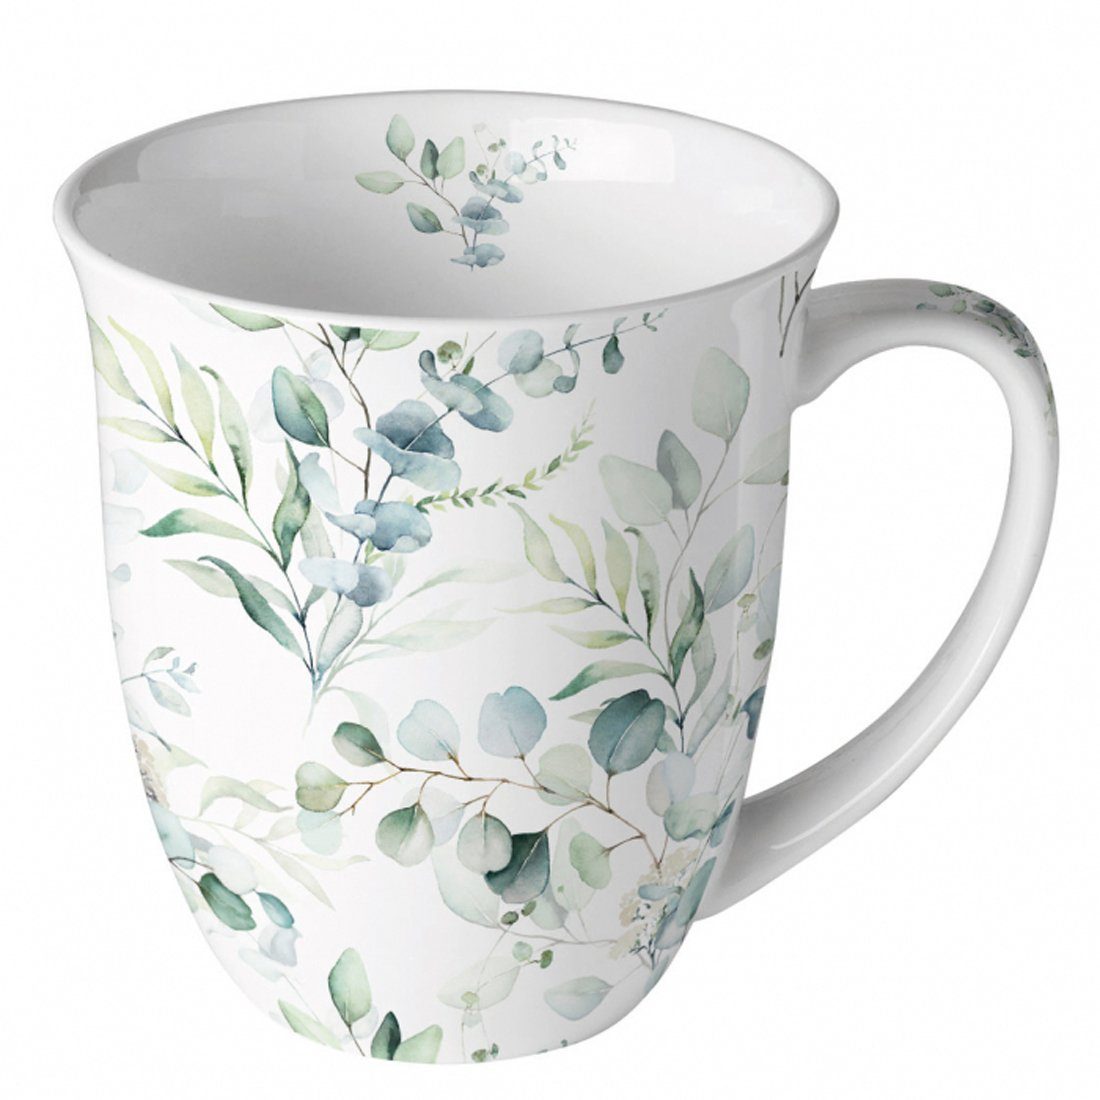 Ambiente Luxury Paper Products Tasse Becher Tasse Kaffeebecher Eukalyptus allover 0,4 l Porzellan